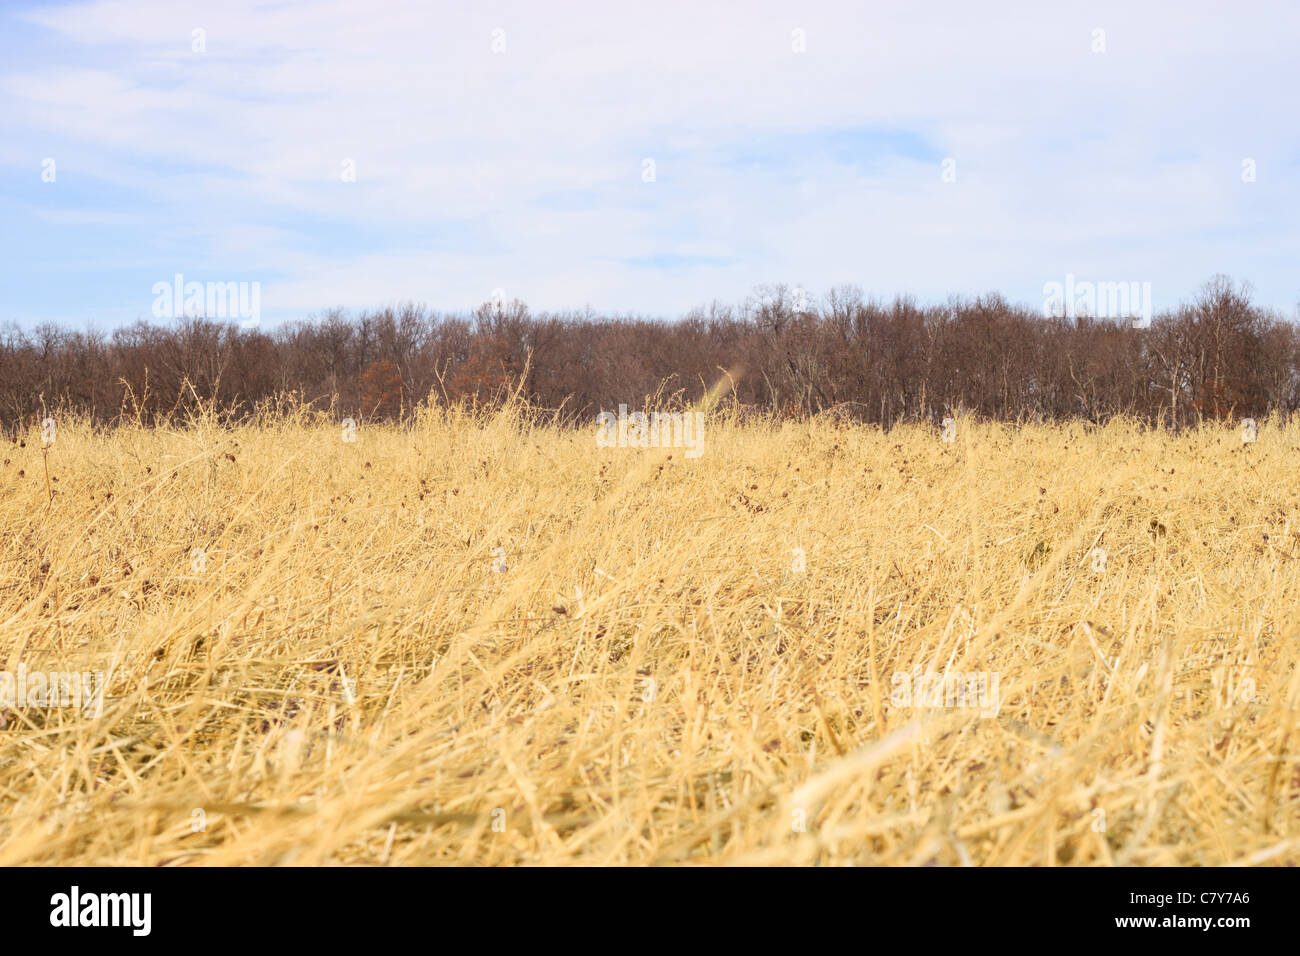 Field of golden alfalfa hay in the winter Stock Photo